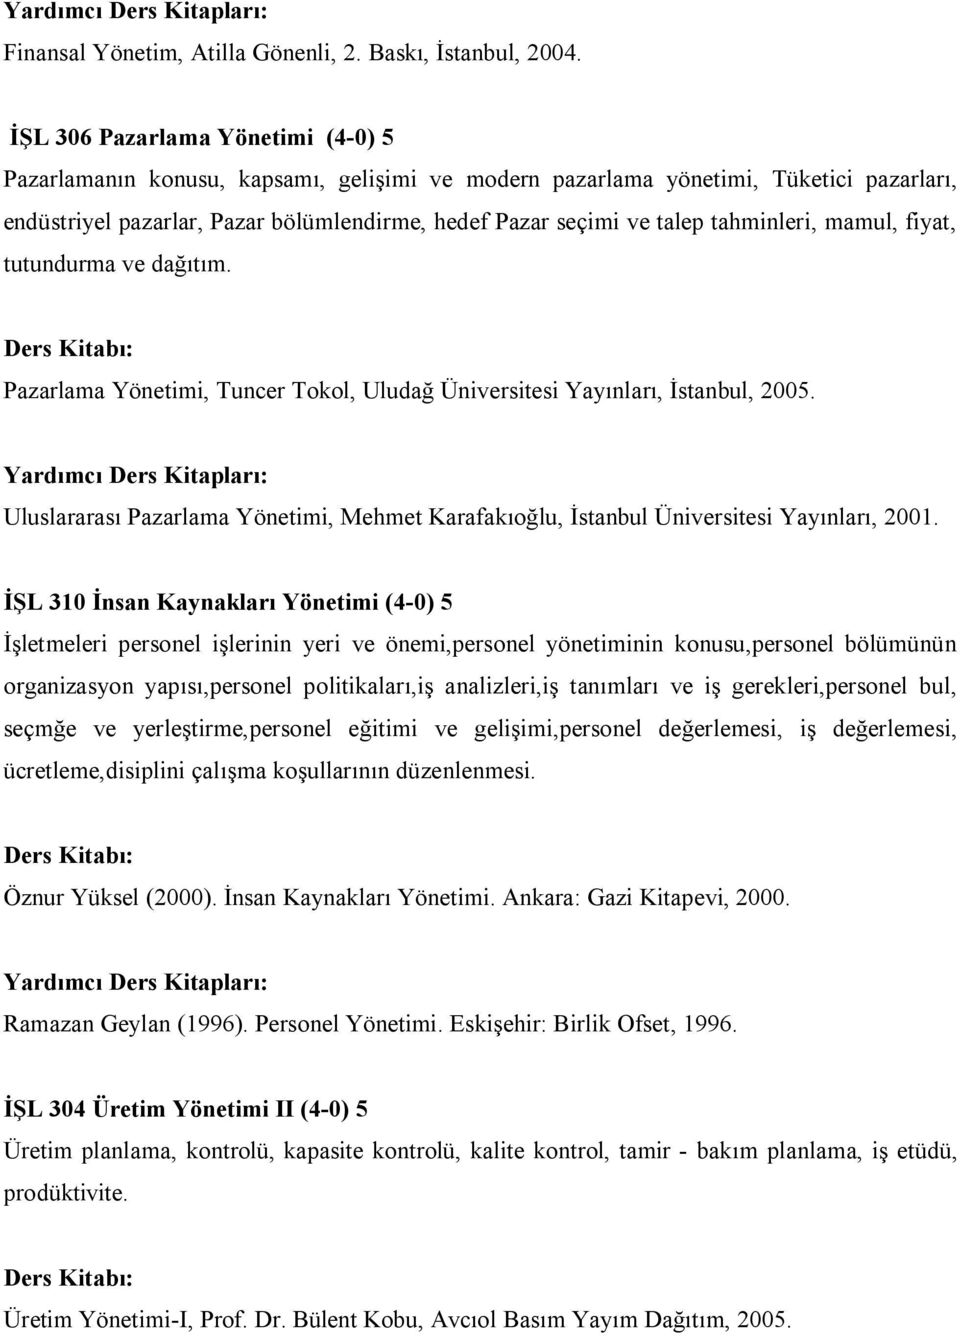 tahminleri, mamul, fiyat, tutundurma ve dağıtım. Pazarlama Yönetimi, Tuncer Tokol, Uludağ Üniversitesi Yayınları, İstanbul, 2005.